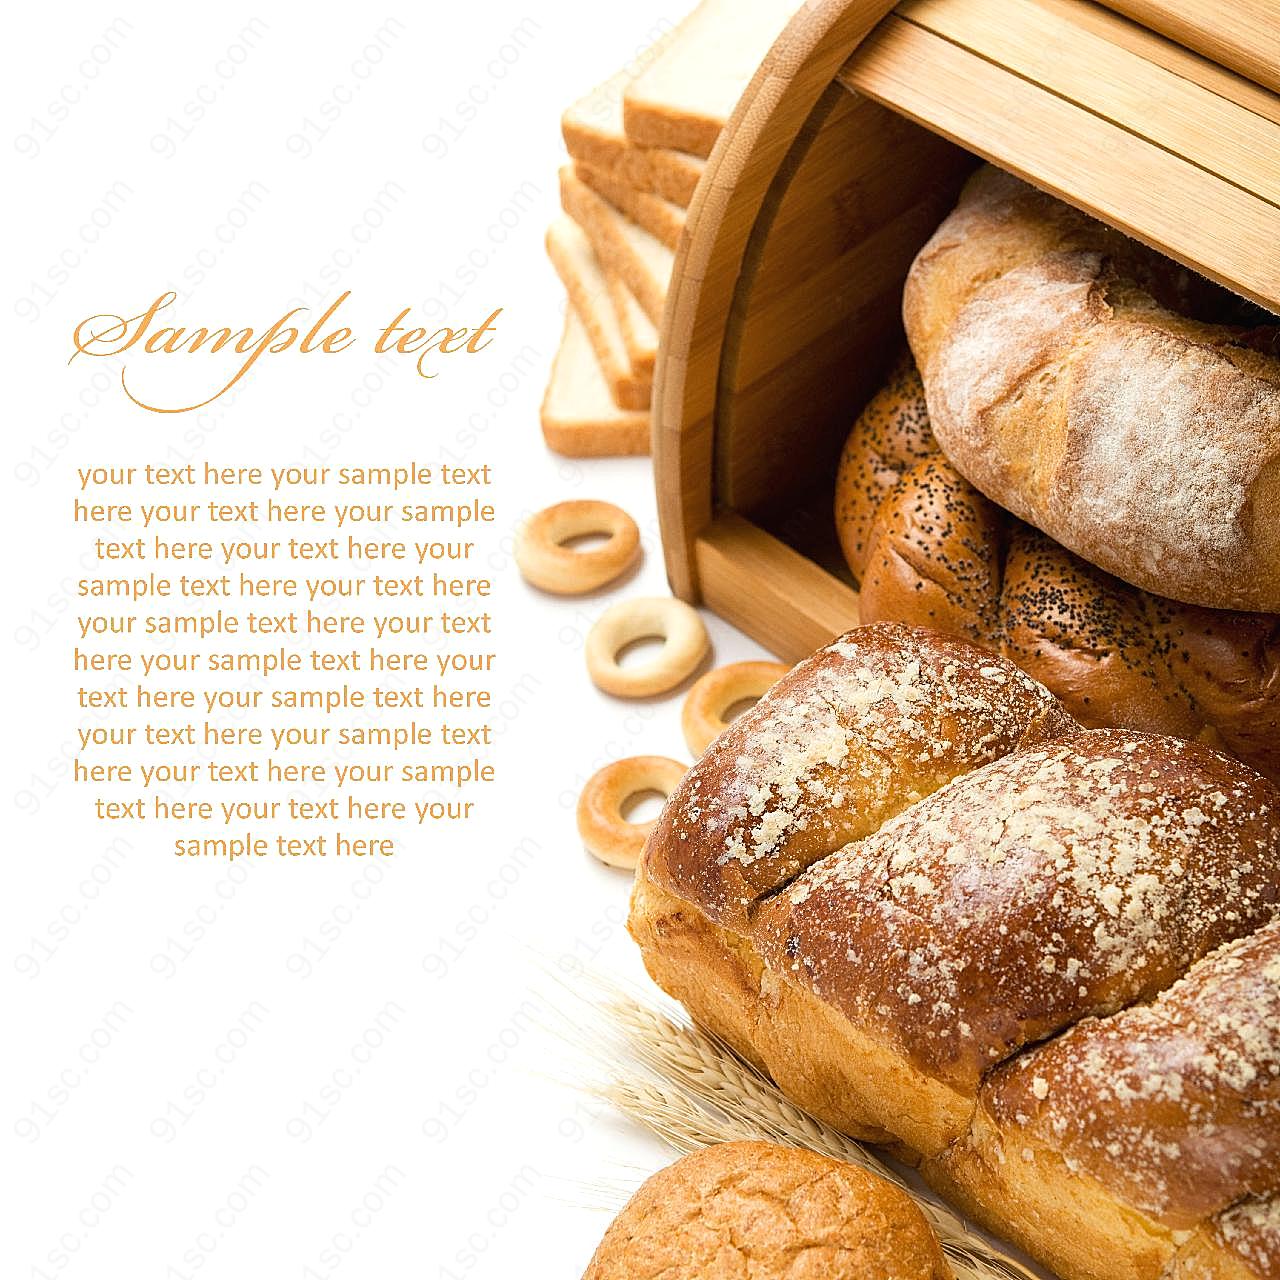 面包圈面包片与烤面包图片食物